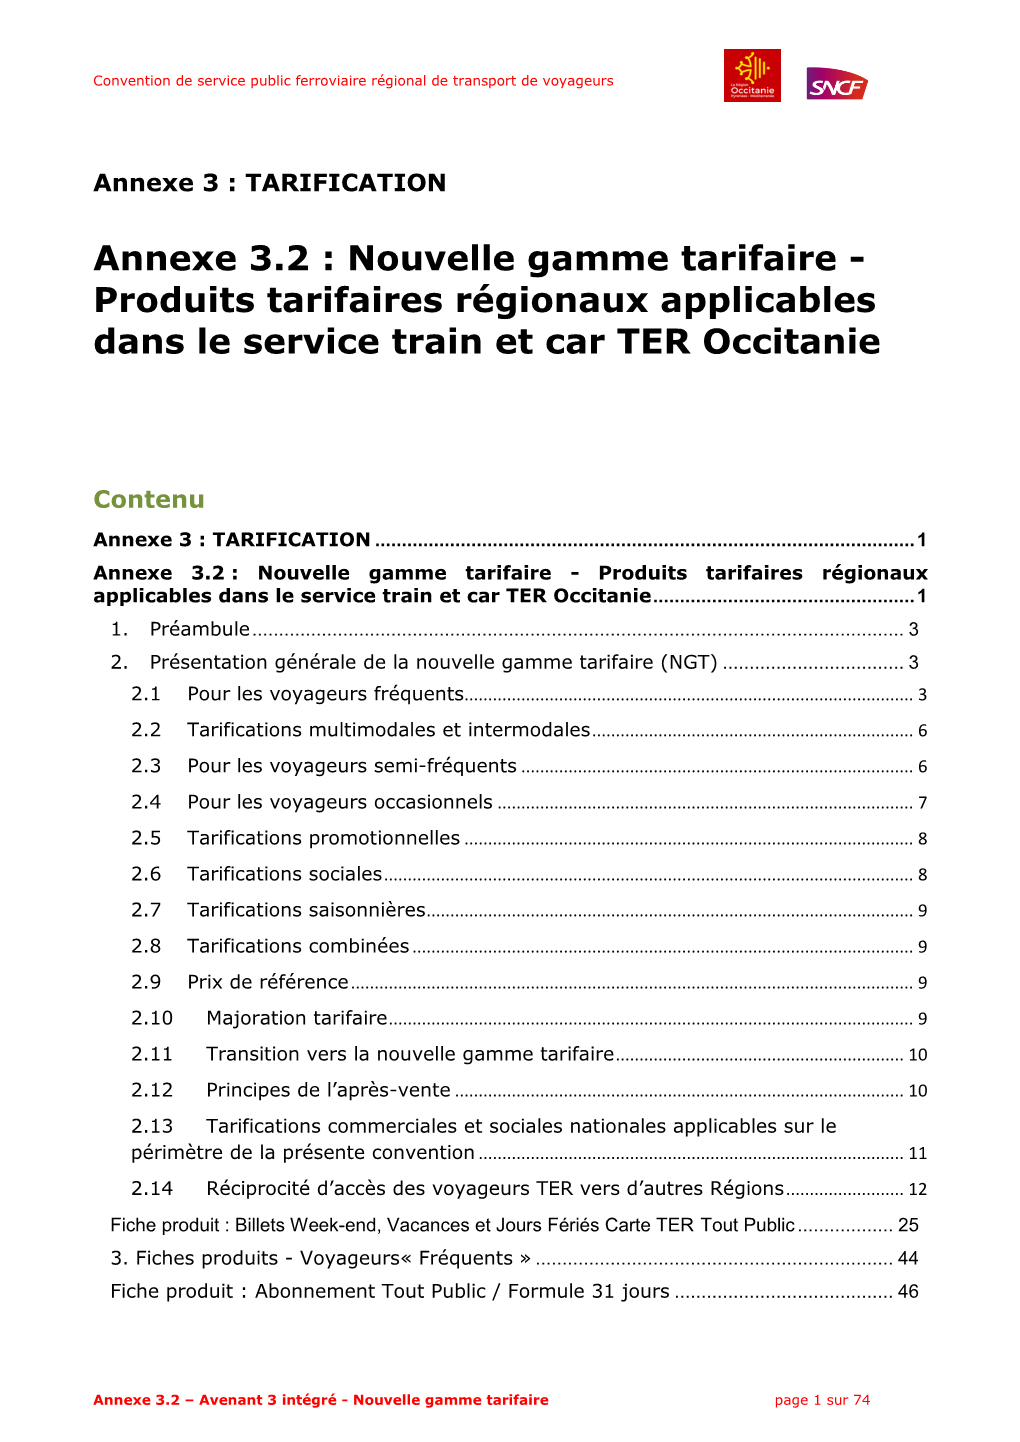 Annexe 3.2 : Nouvelle Gamme Tarifaire - Produits Tarifaires Régionaux Applicables Dans Le Service Train Et Car TER Occitanie